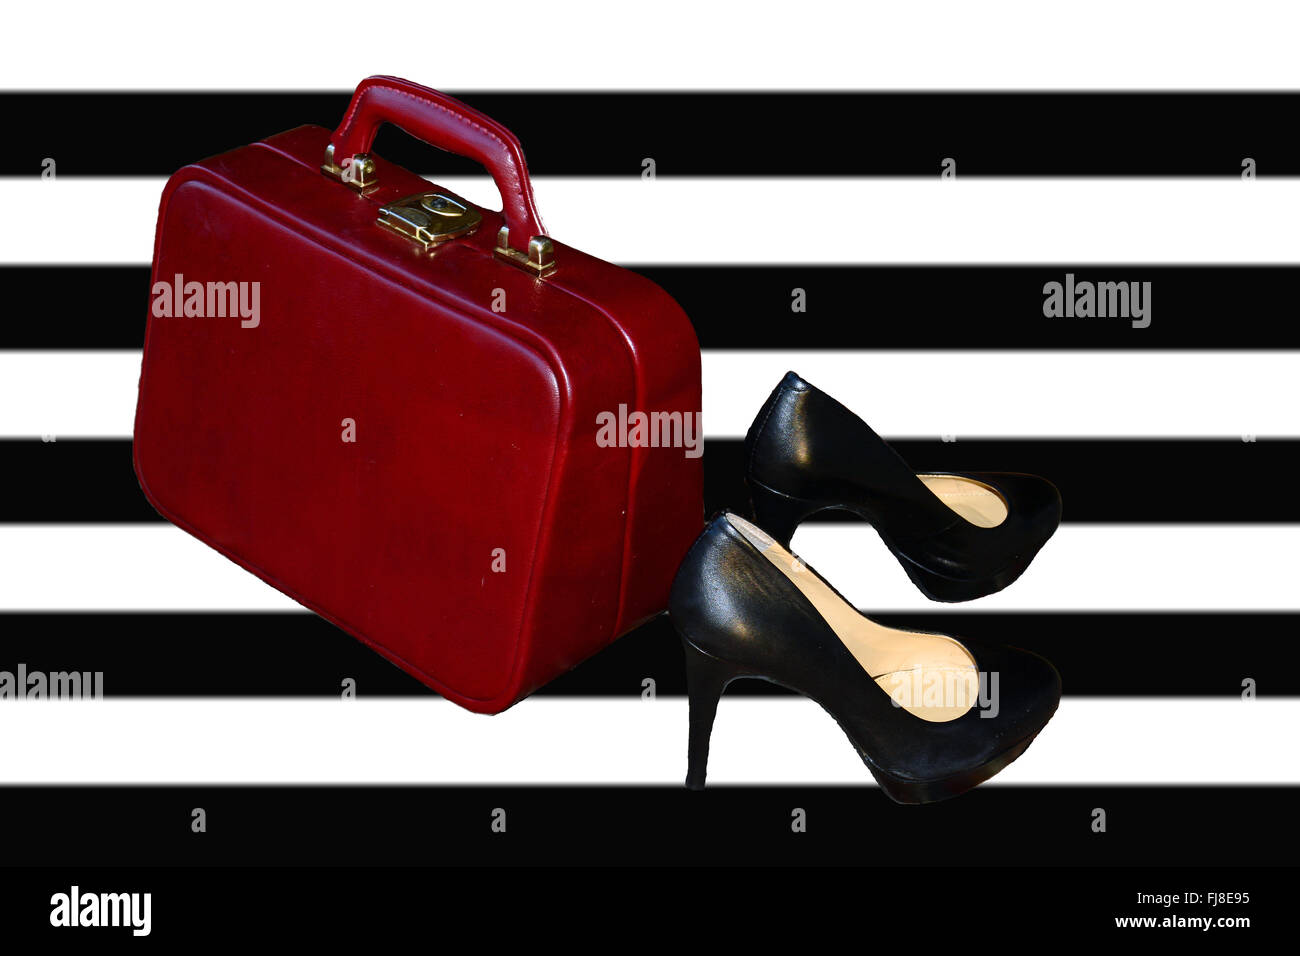 Handgepäck und Schuhe. Roten Koffer, High Heels Hintergrund Stockfoto